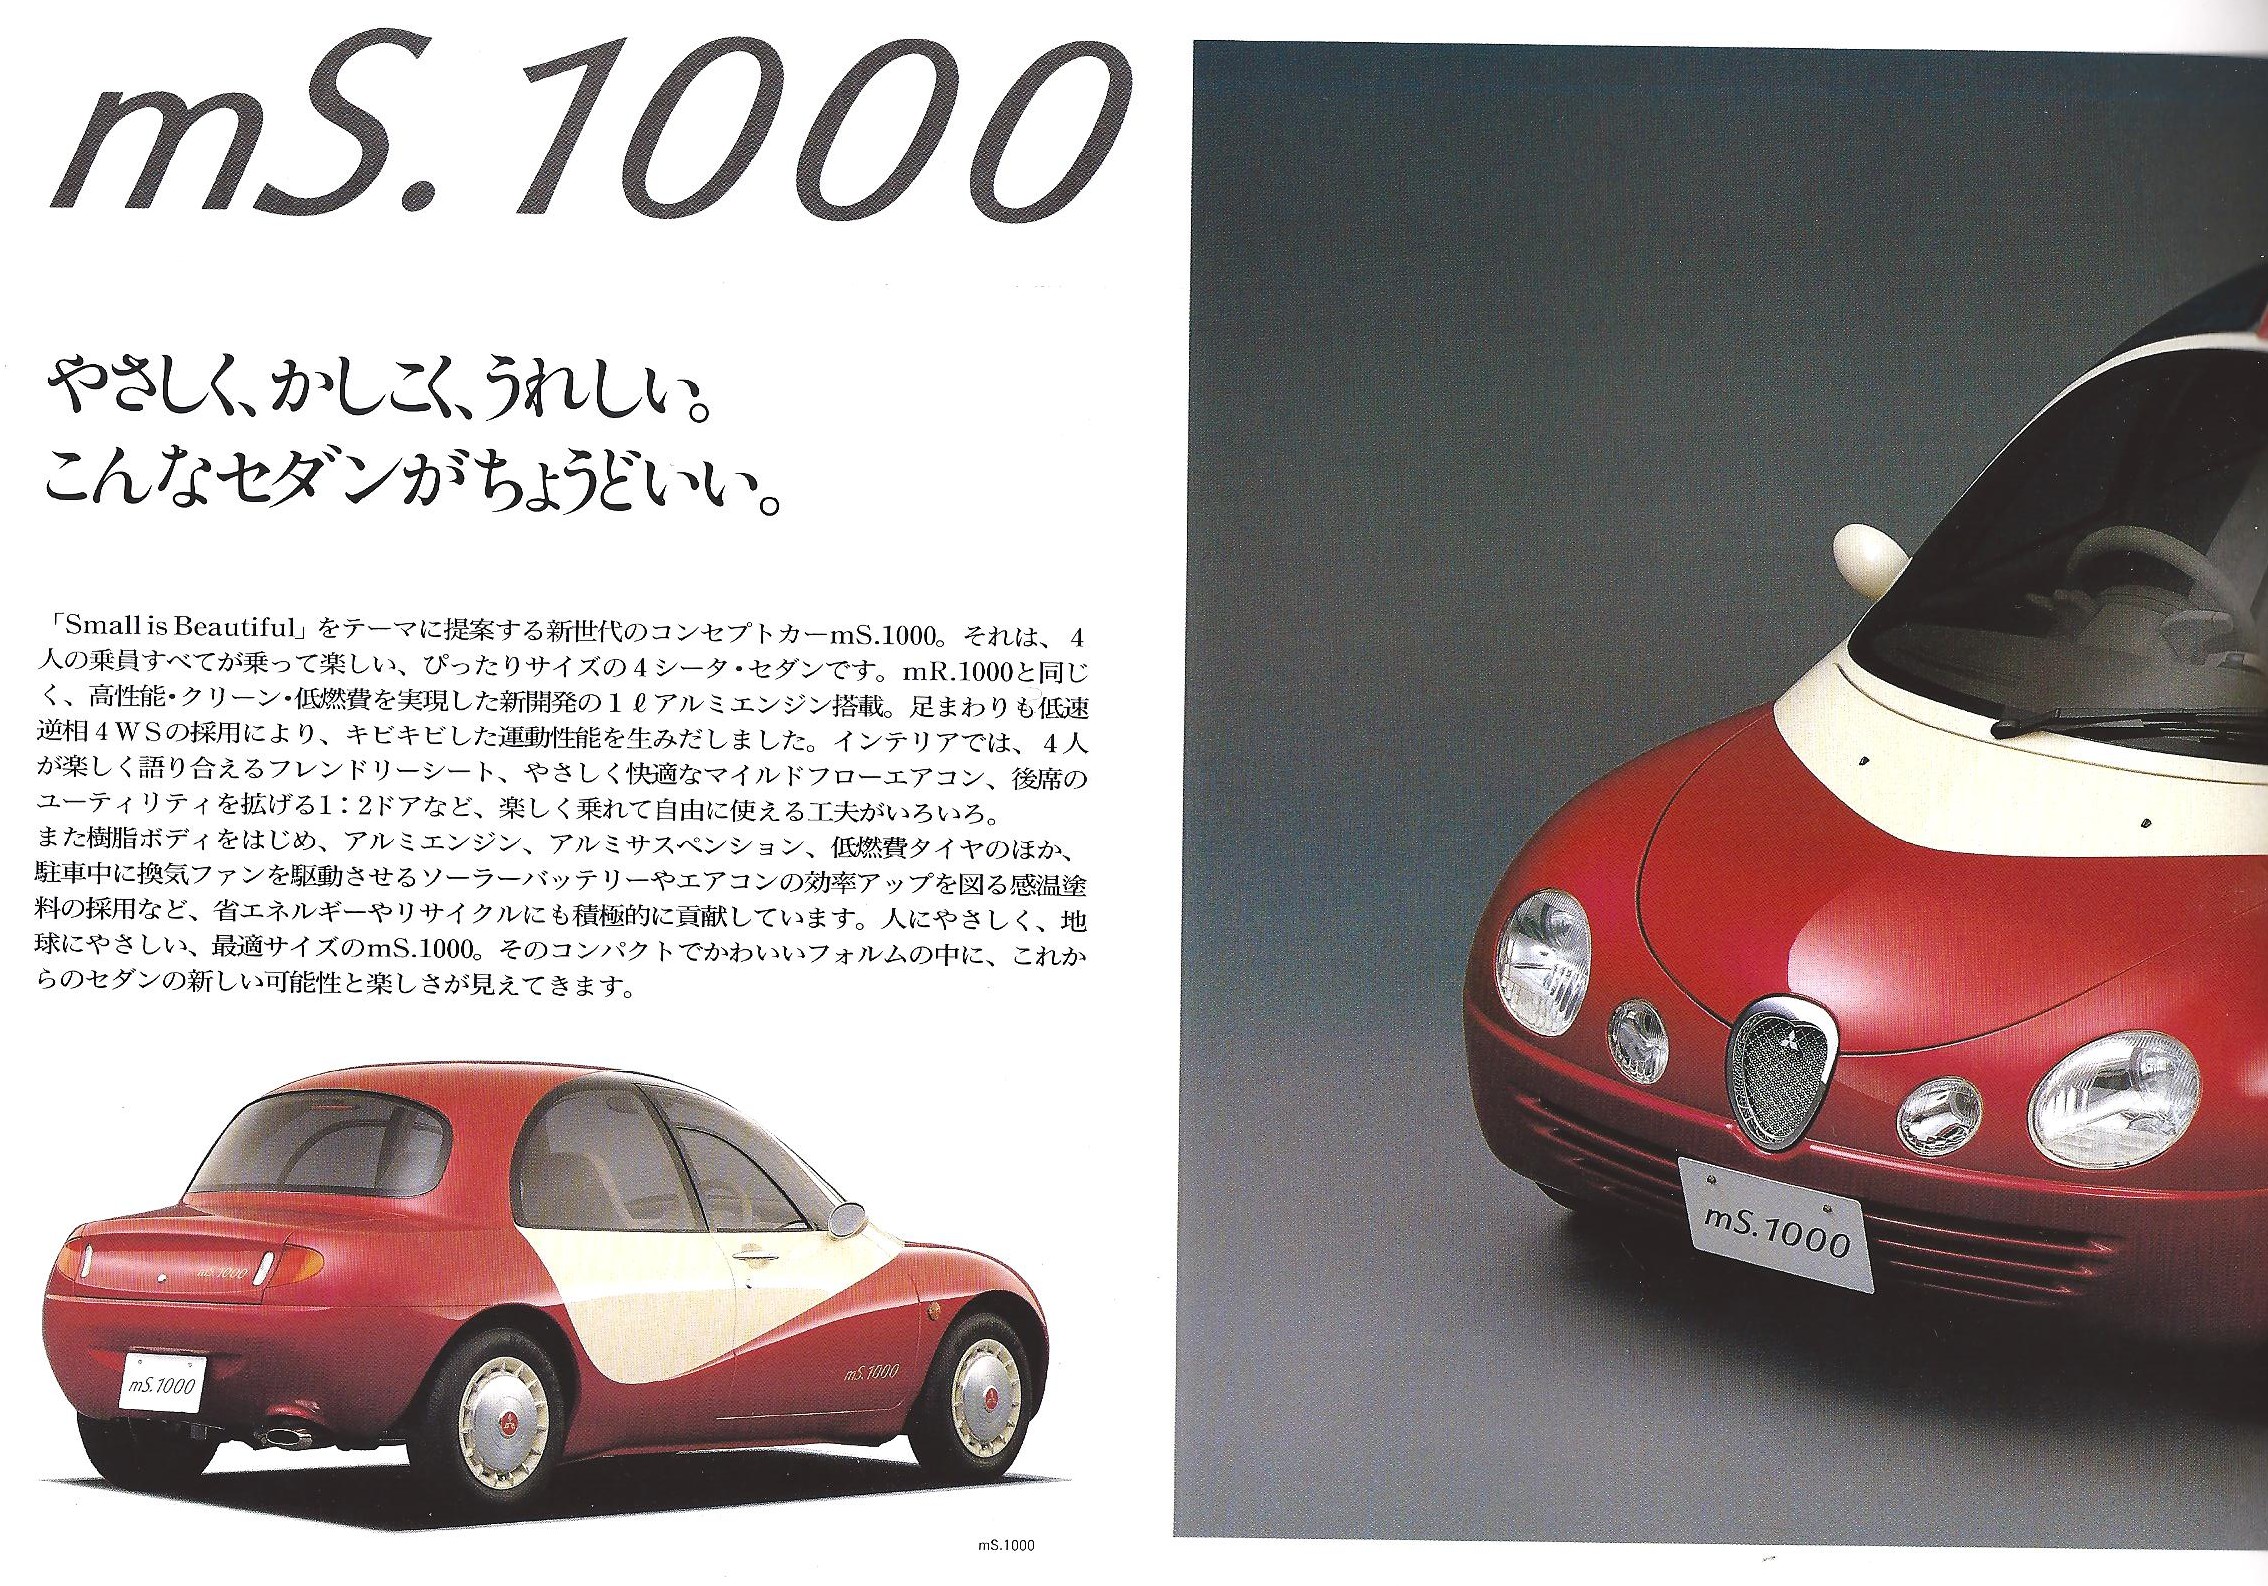 Mitsubishi mS.1000, 1991